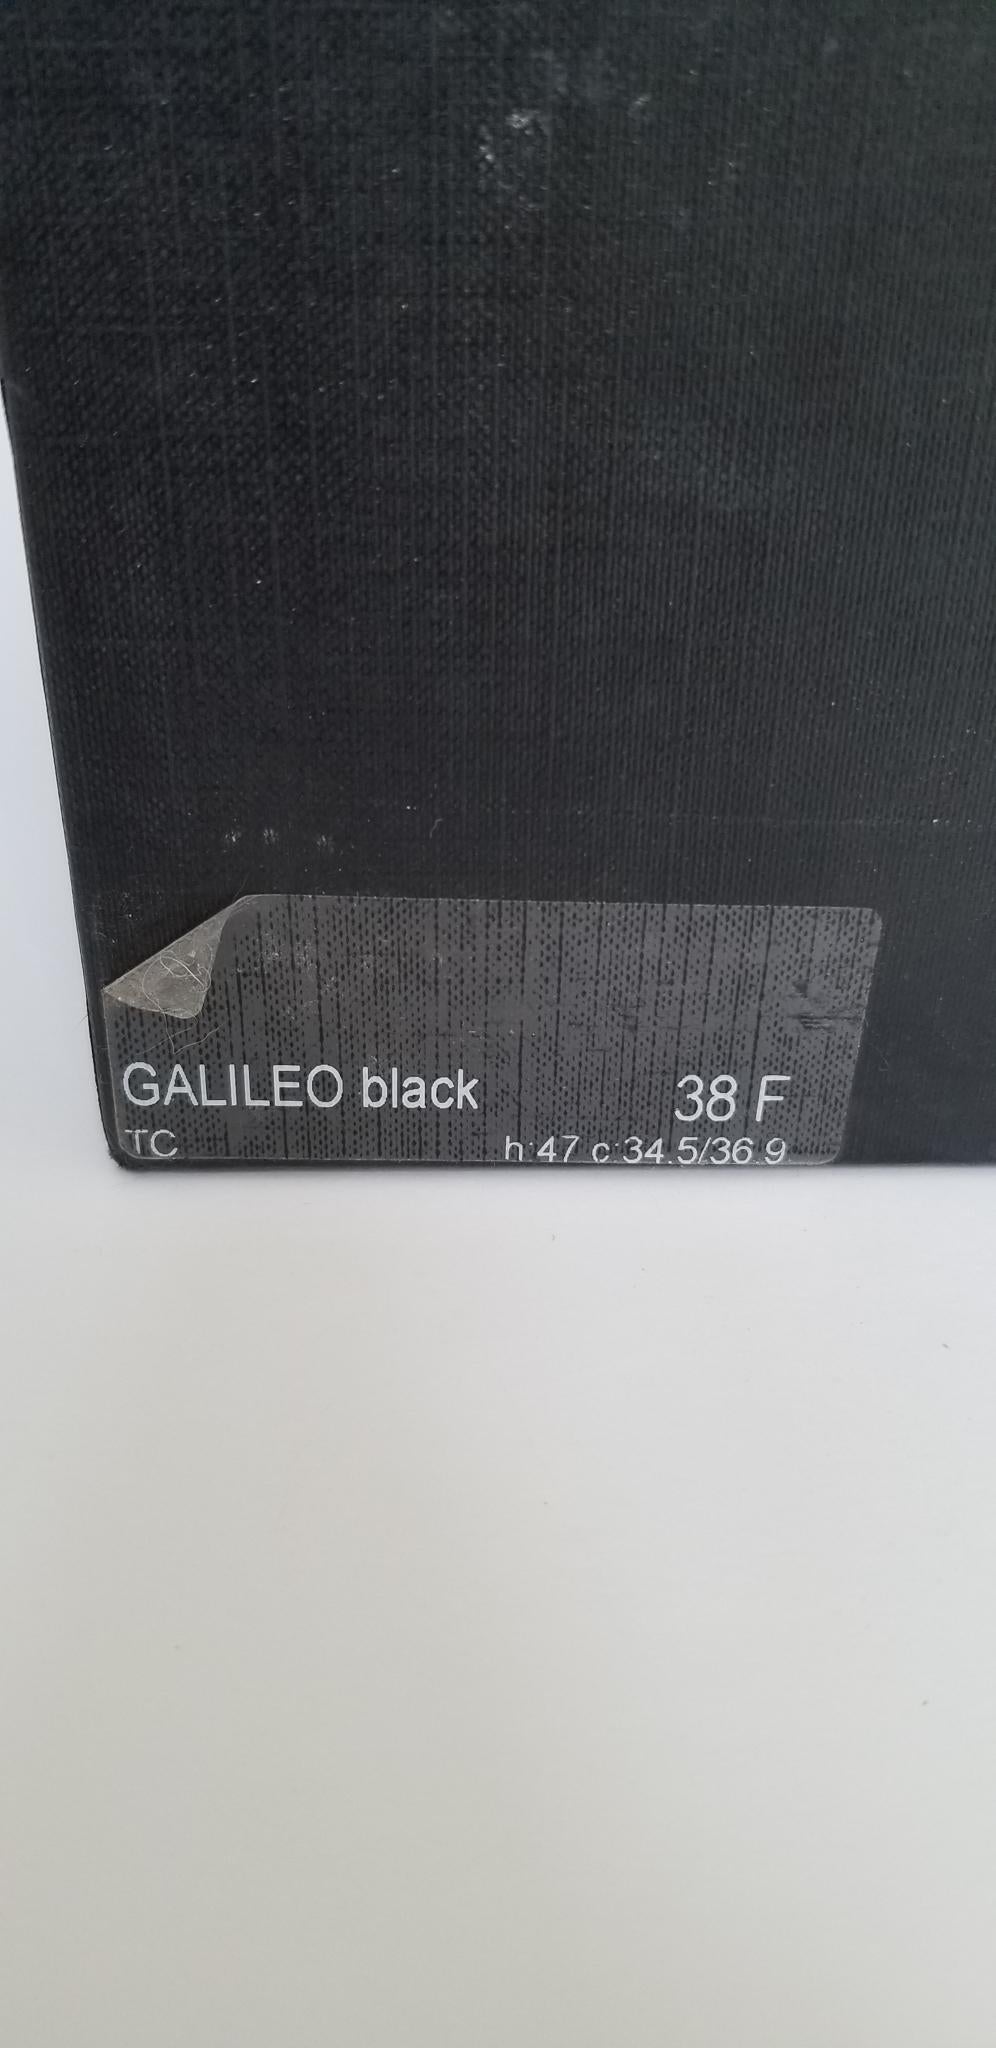 Tucci Galileo Field Boot - Black - 38F